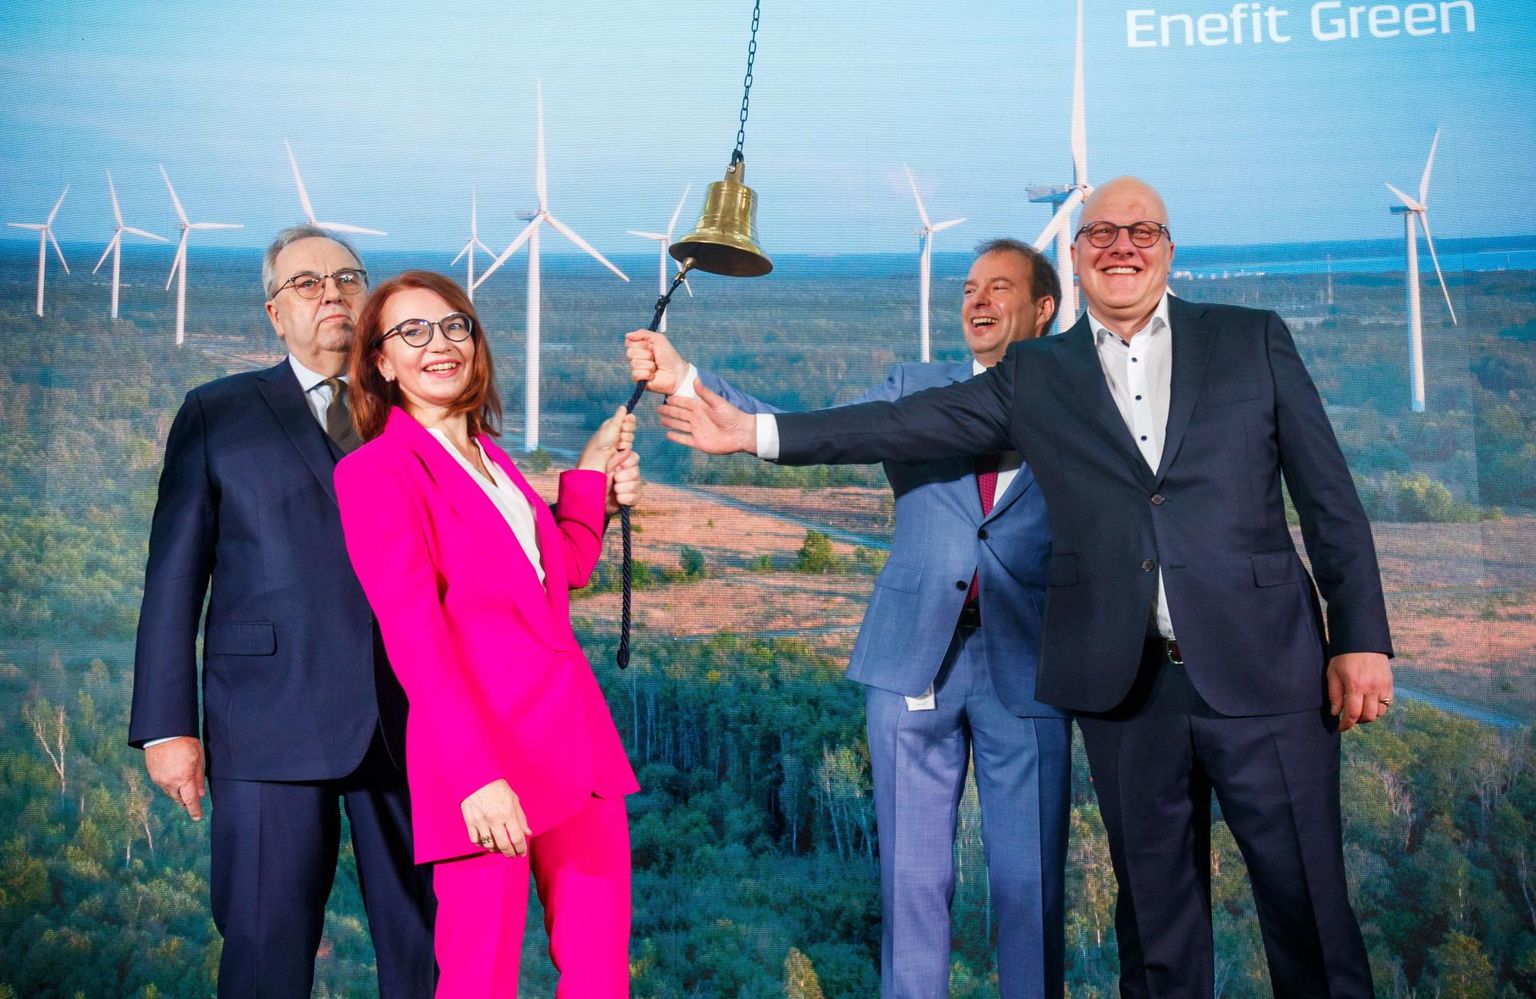 Enefit Greeni aktsia esimese kauplemispäeva tähistamine Energia avastuskeskuses. Vasakult Väino Kaldoja, Keit Pentus-Rosimannus, Hando Sutter ja Aavo Kärmas.